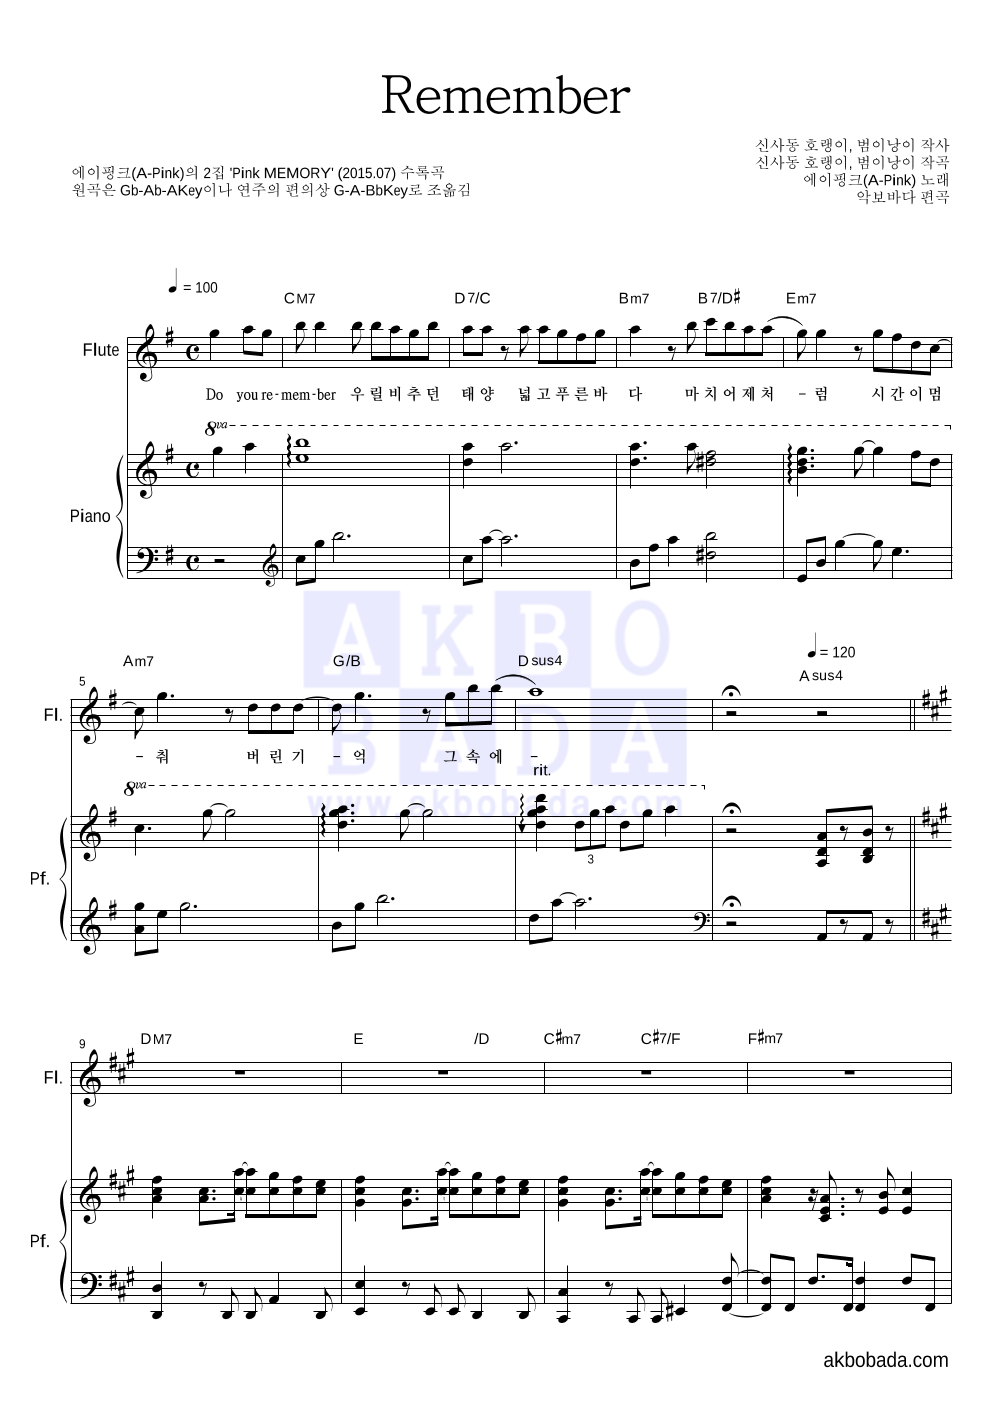 에이핑크 - Remember 플룻&피아노 악보 